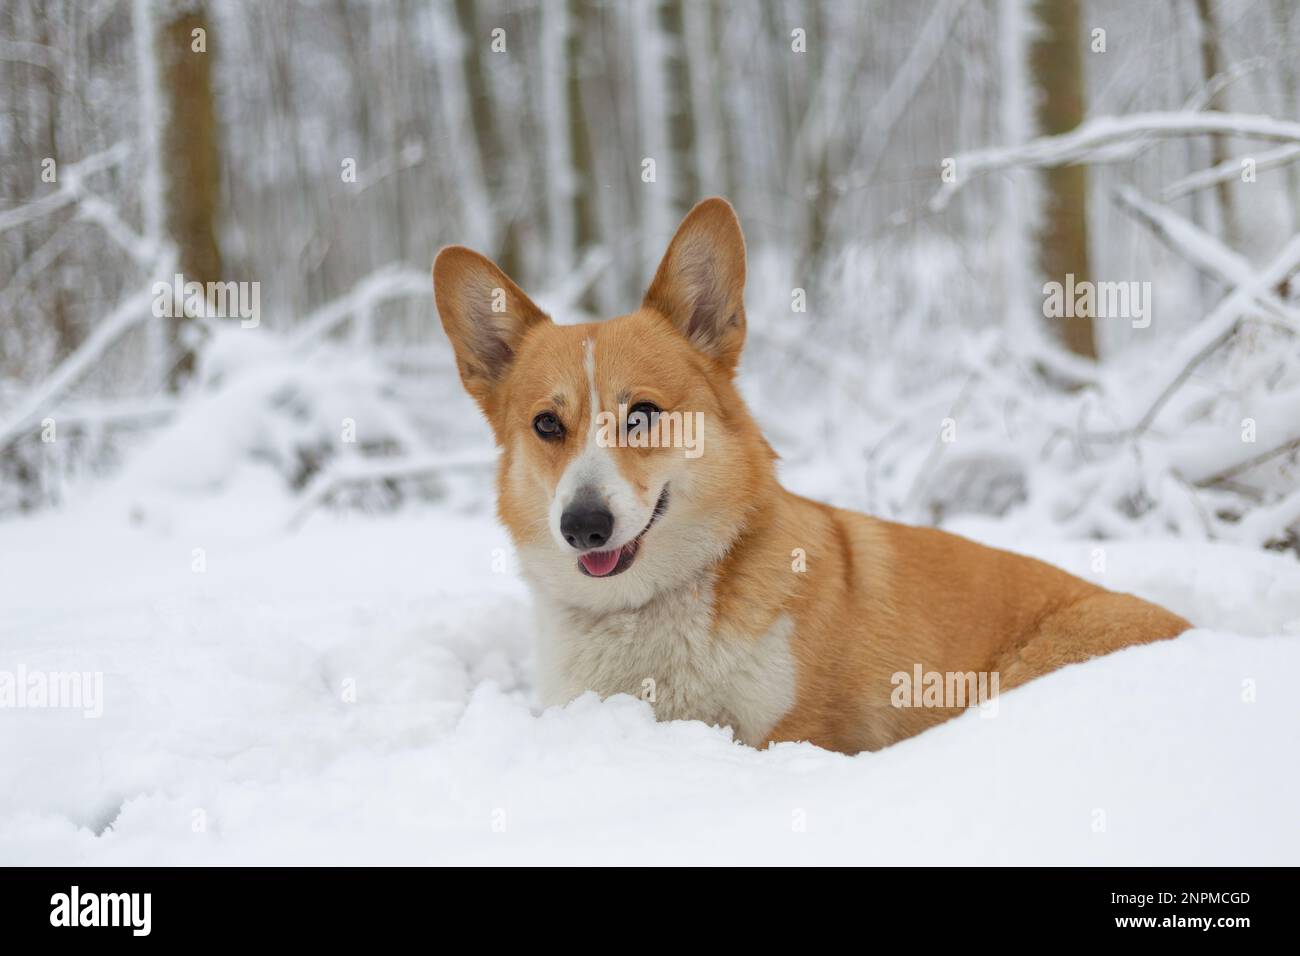 Chien de Pembroke gallois Corgi dans les paysages d'hiver chien heureux dans la neige Banque D'Images